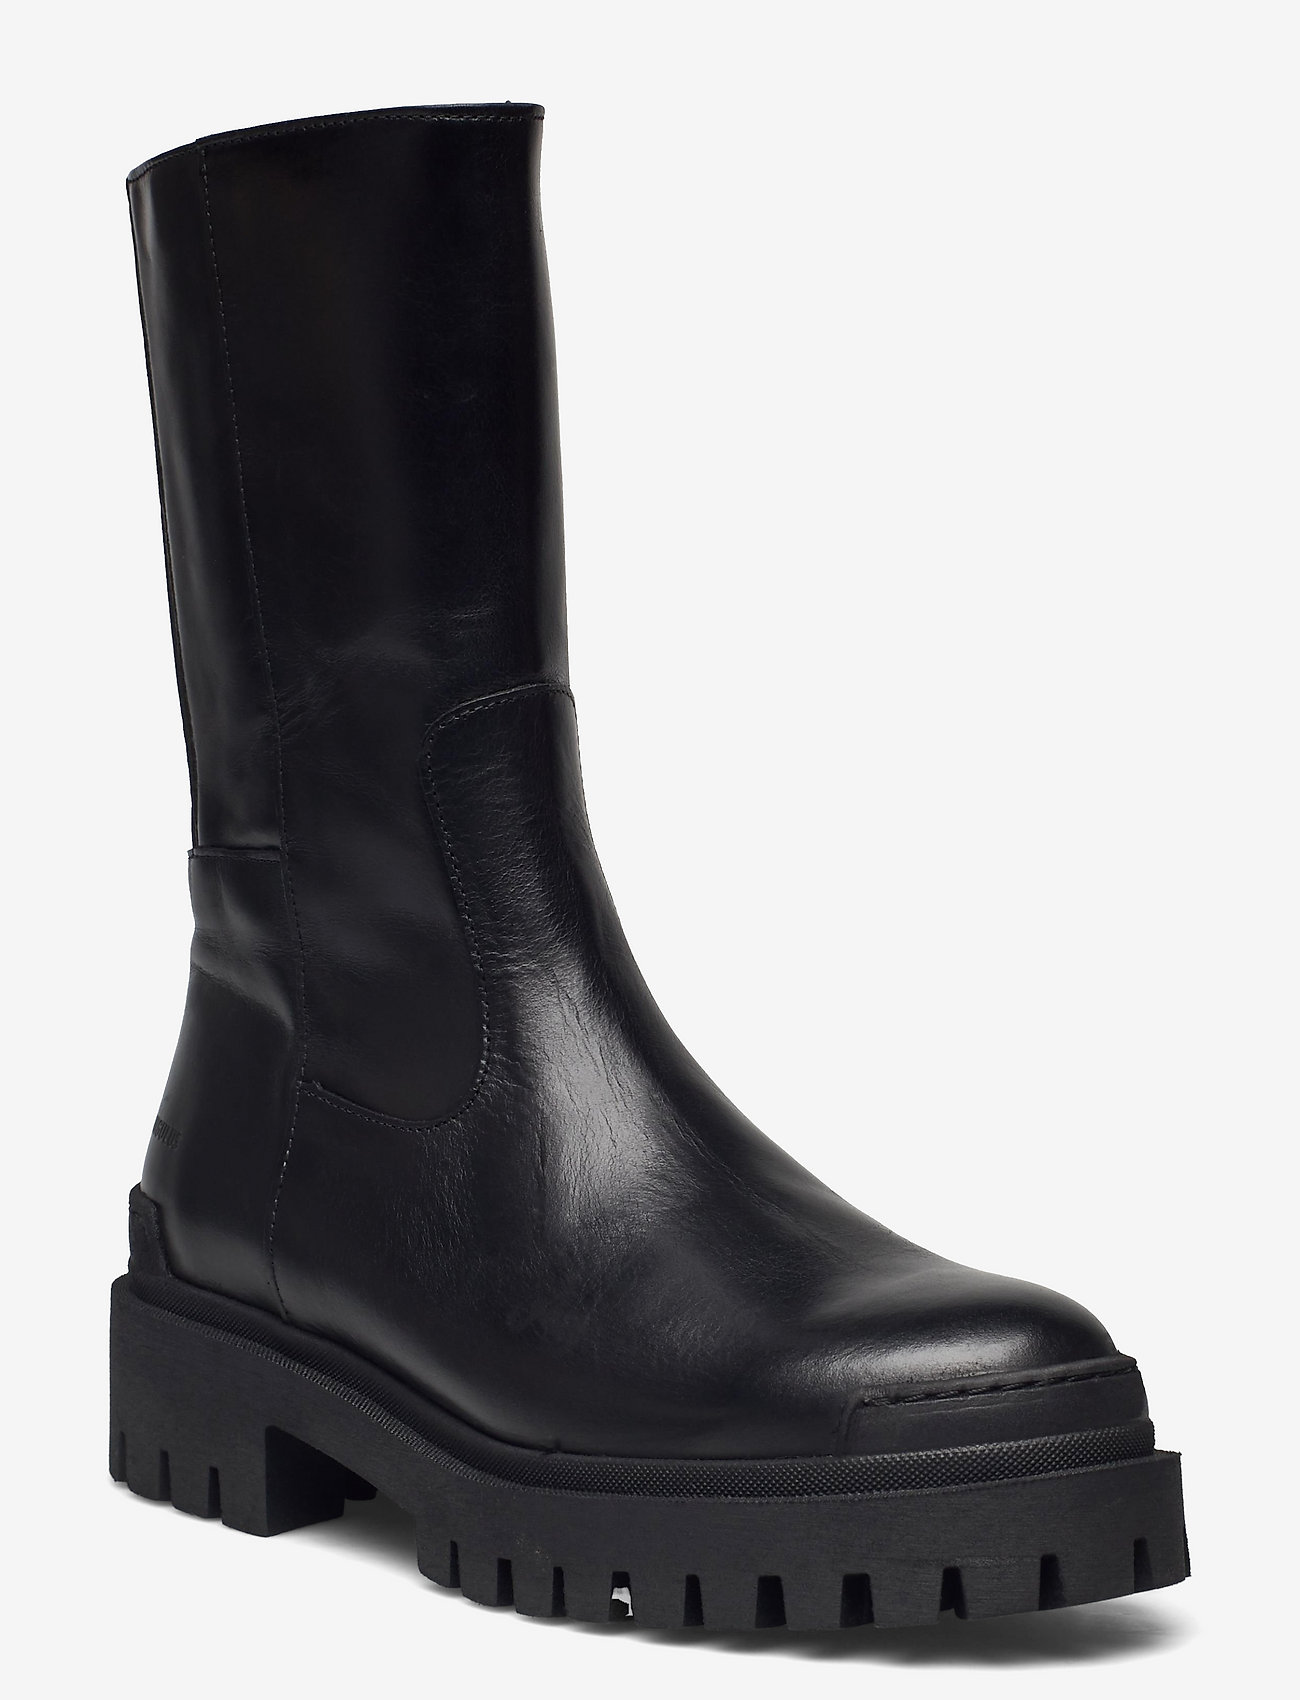 ANGULUS - Boots - flat - lygiapadžiai aulinukai iki kulkšnių - 1835/019 black /black - 0